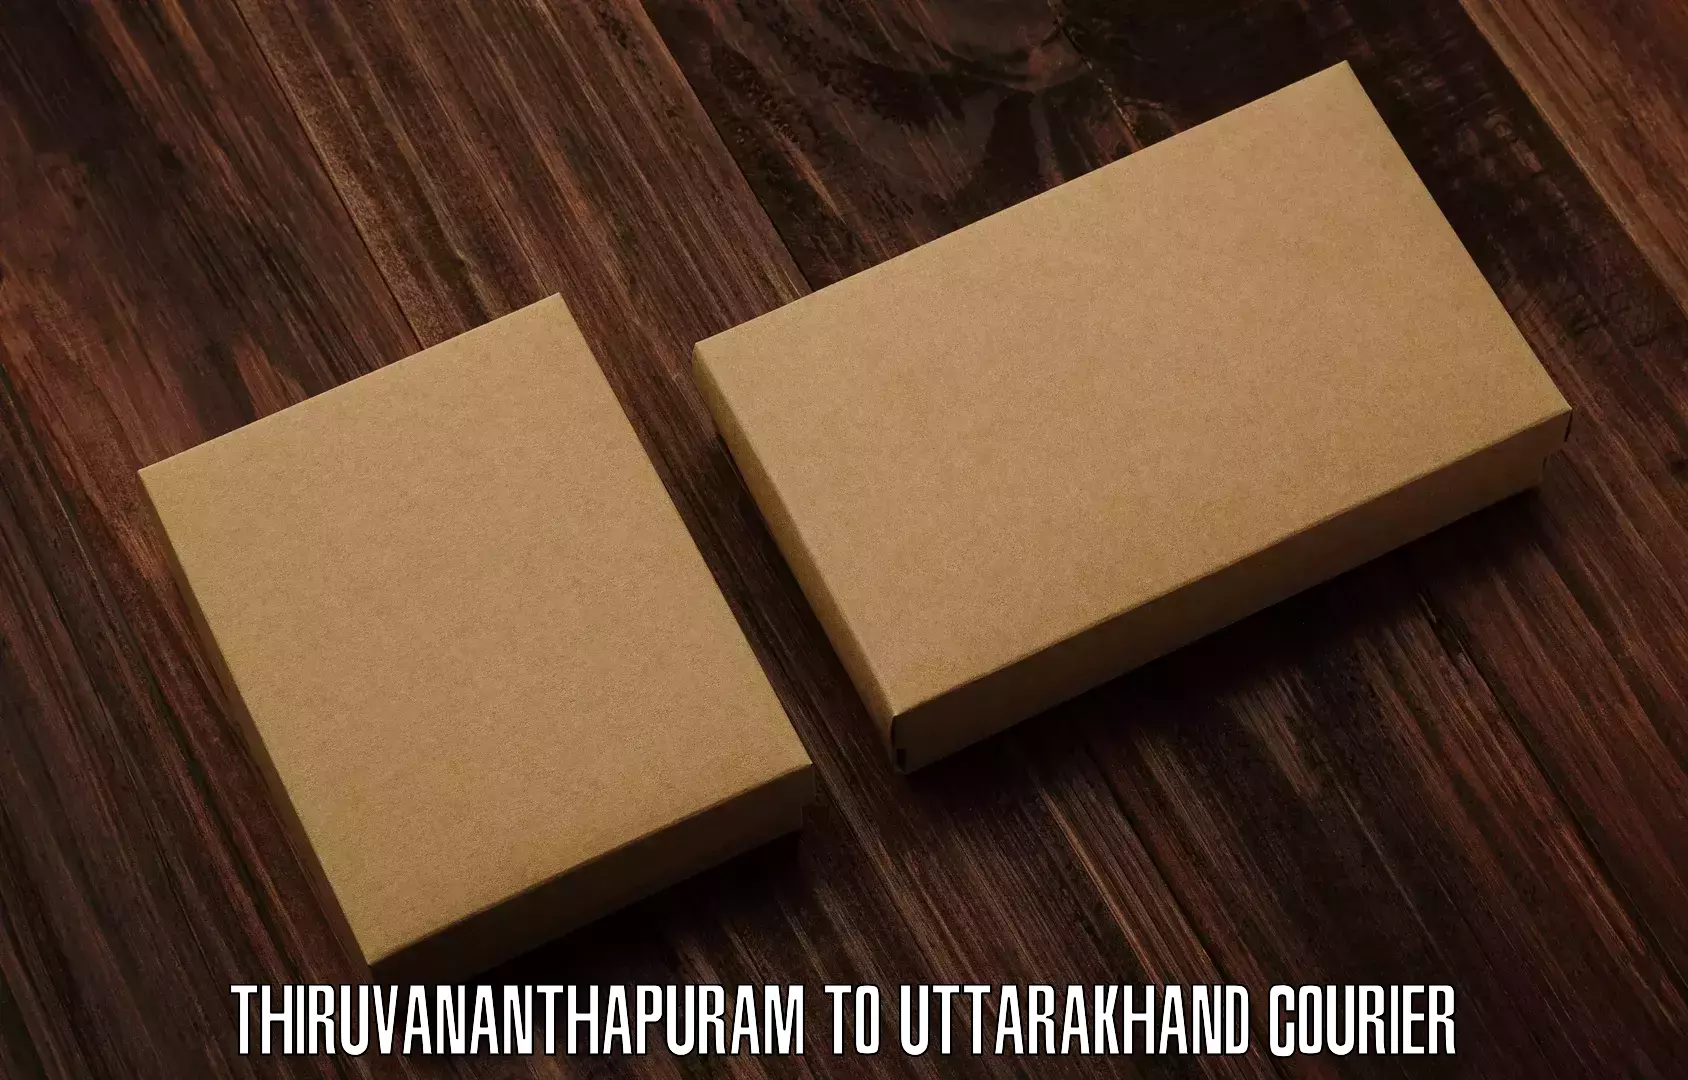 User-friendly delivery service Thiruvananthapuram to Uttarkashi